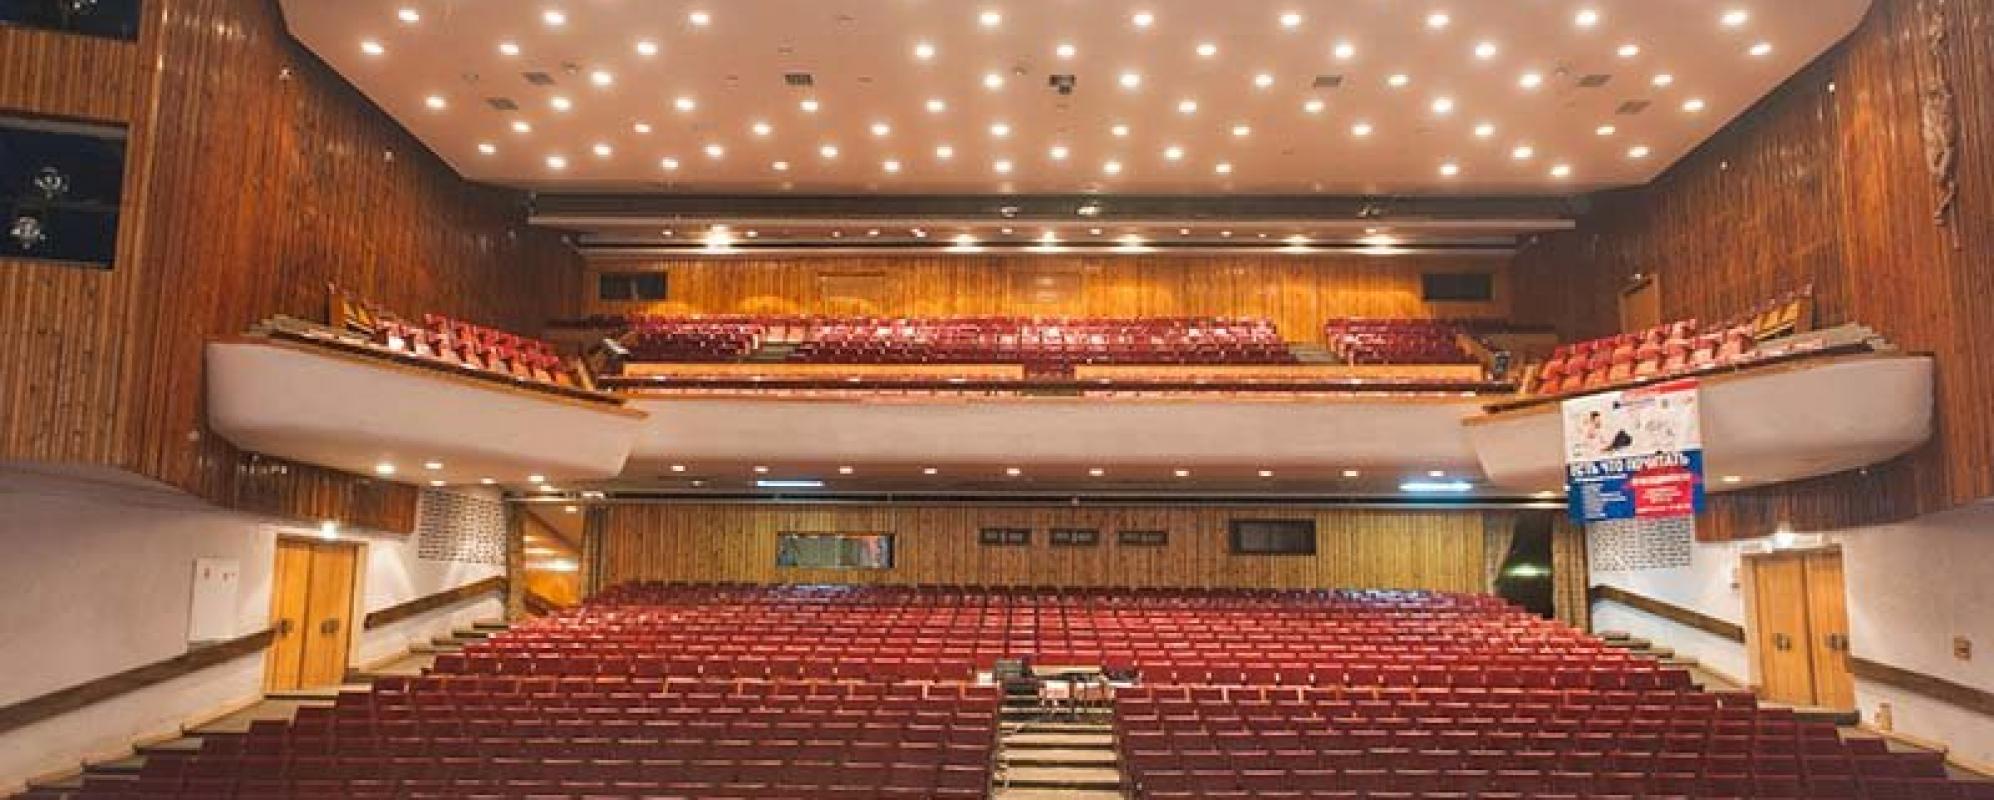 Фотографии концертного зала Большой зал Центра Культуры и Отдыха города Иванова